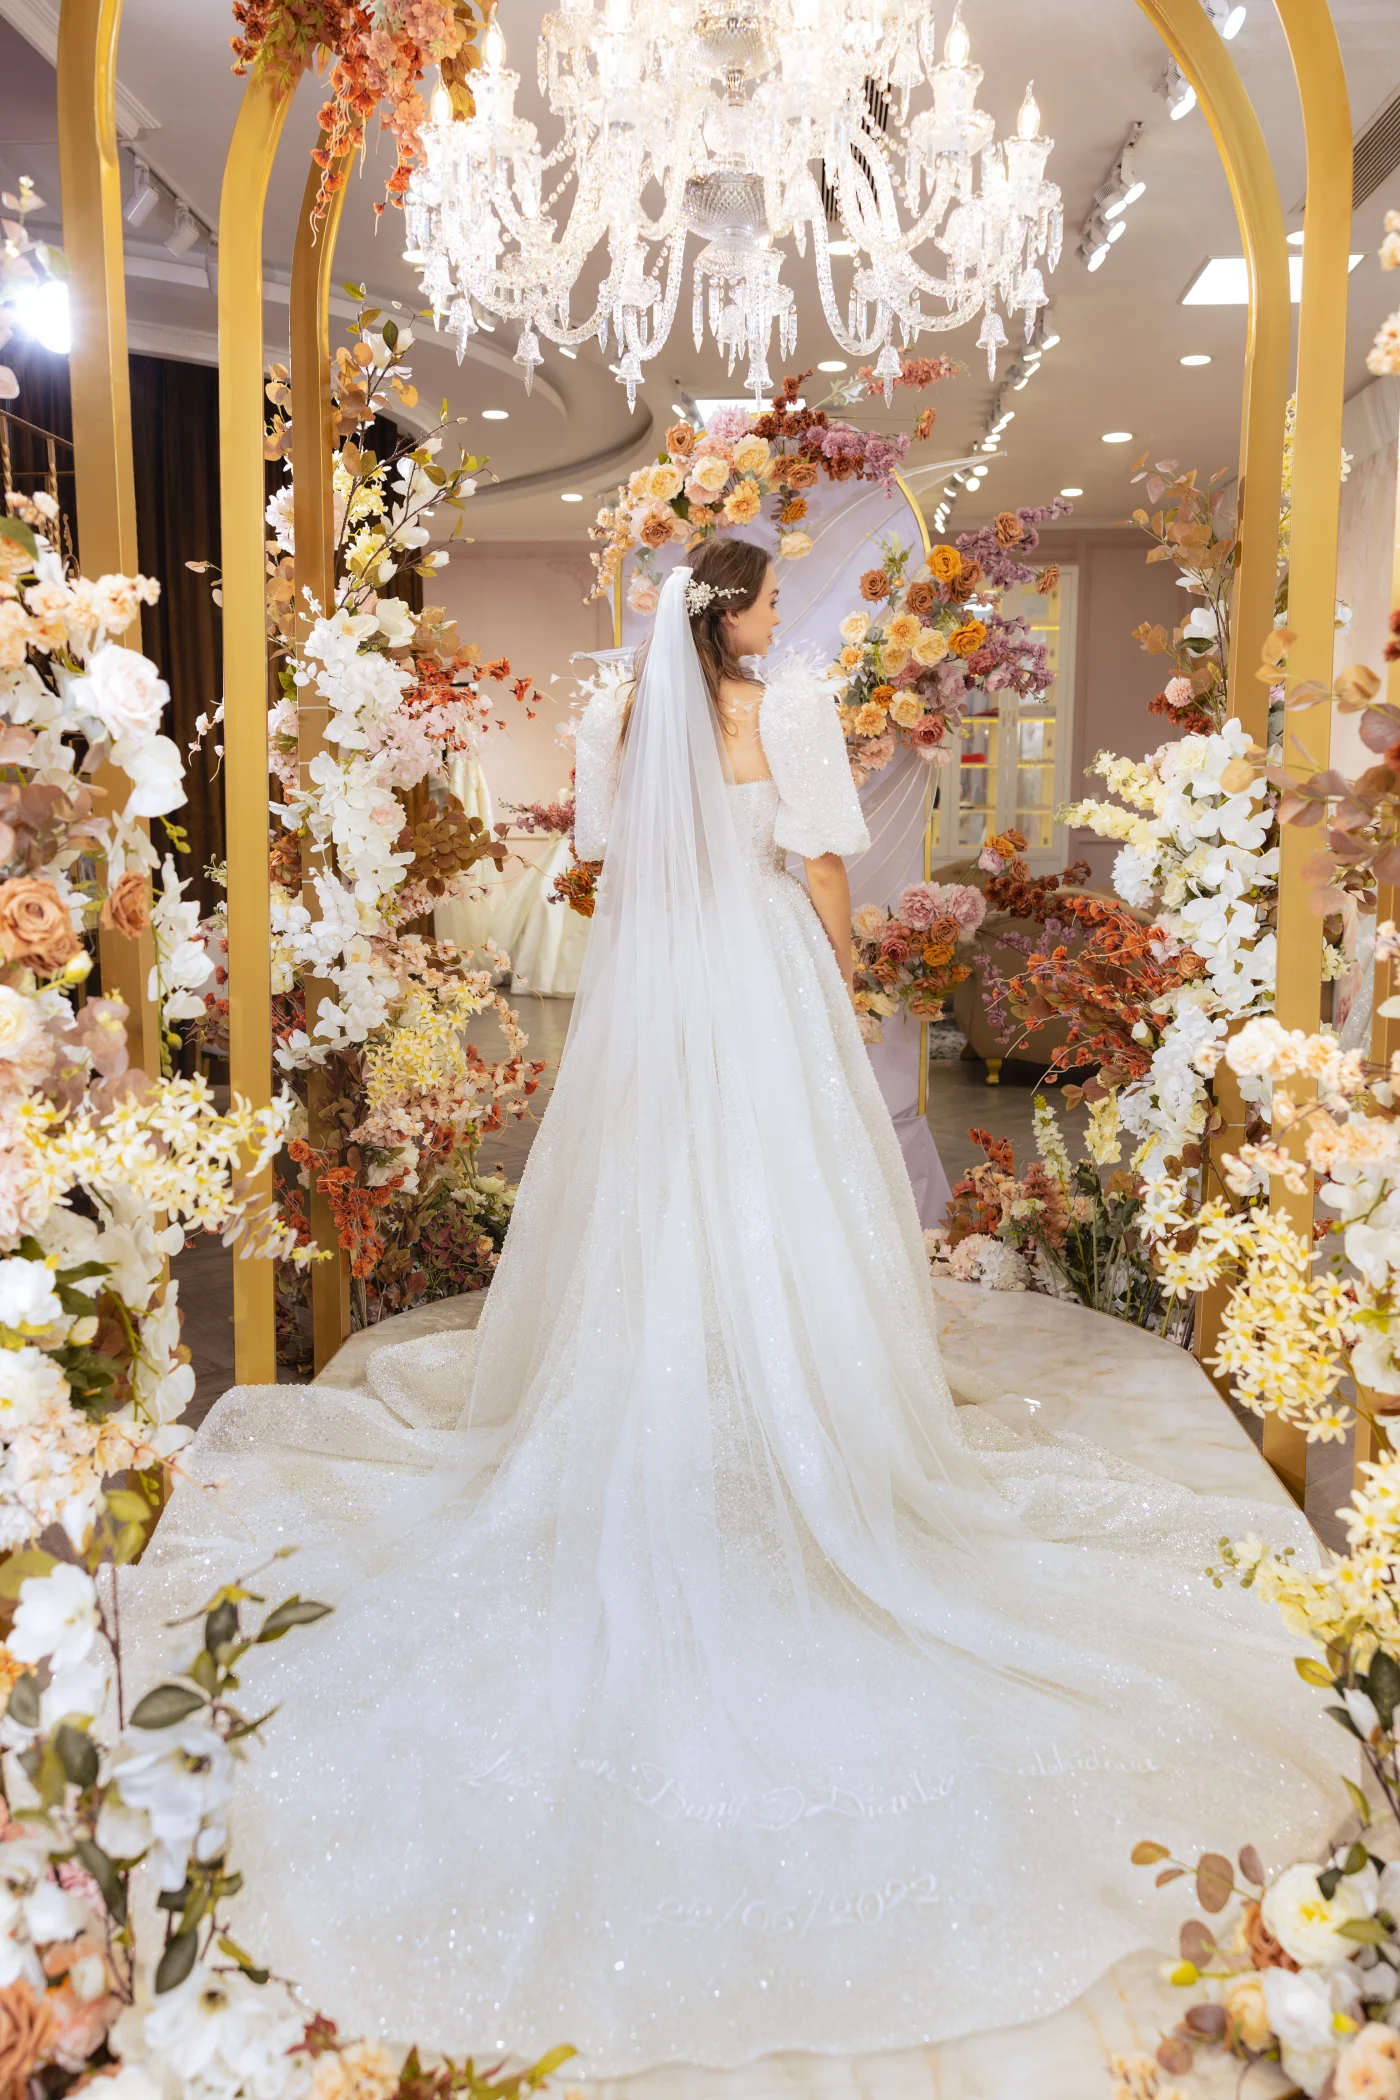 Veil váy cưới 2m có thêu ngày cưới và tên của cặp đôi làm kỷ niệm